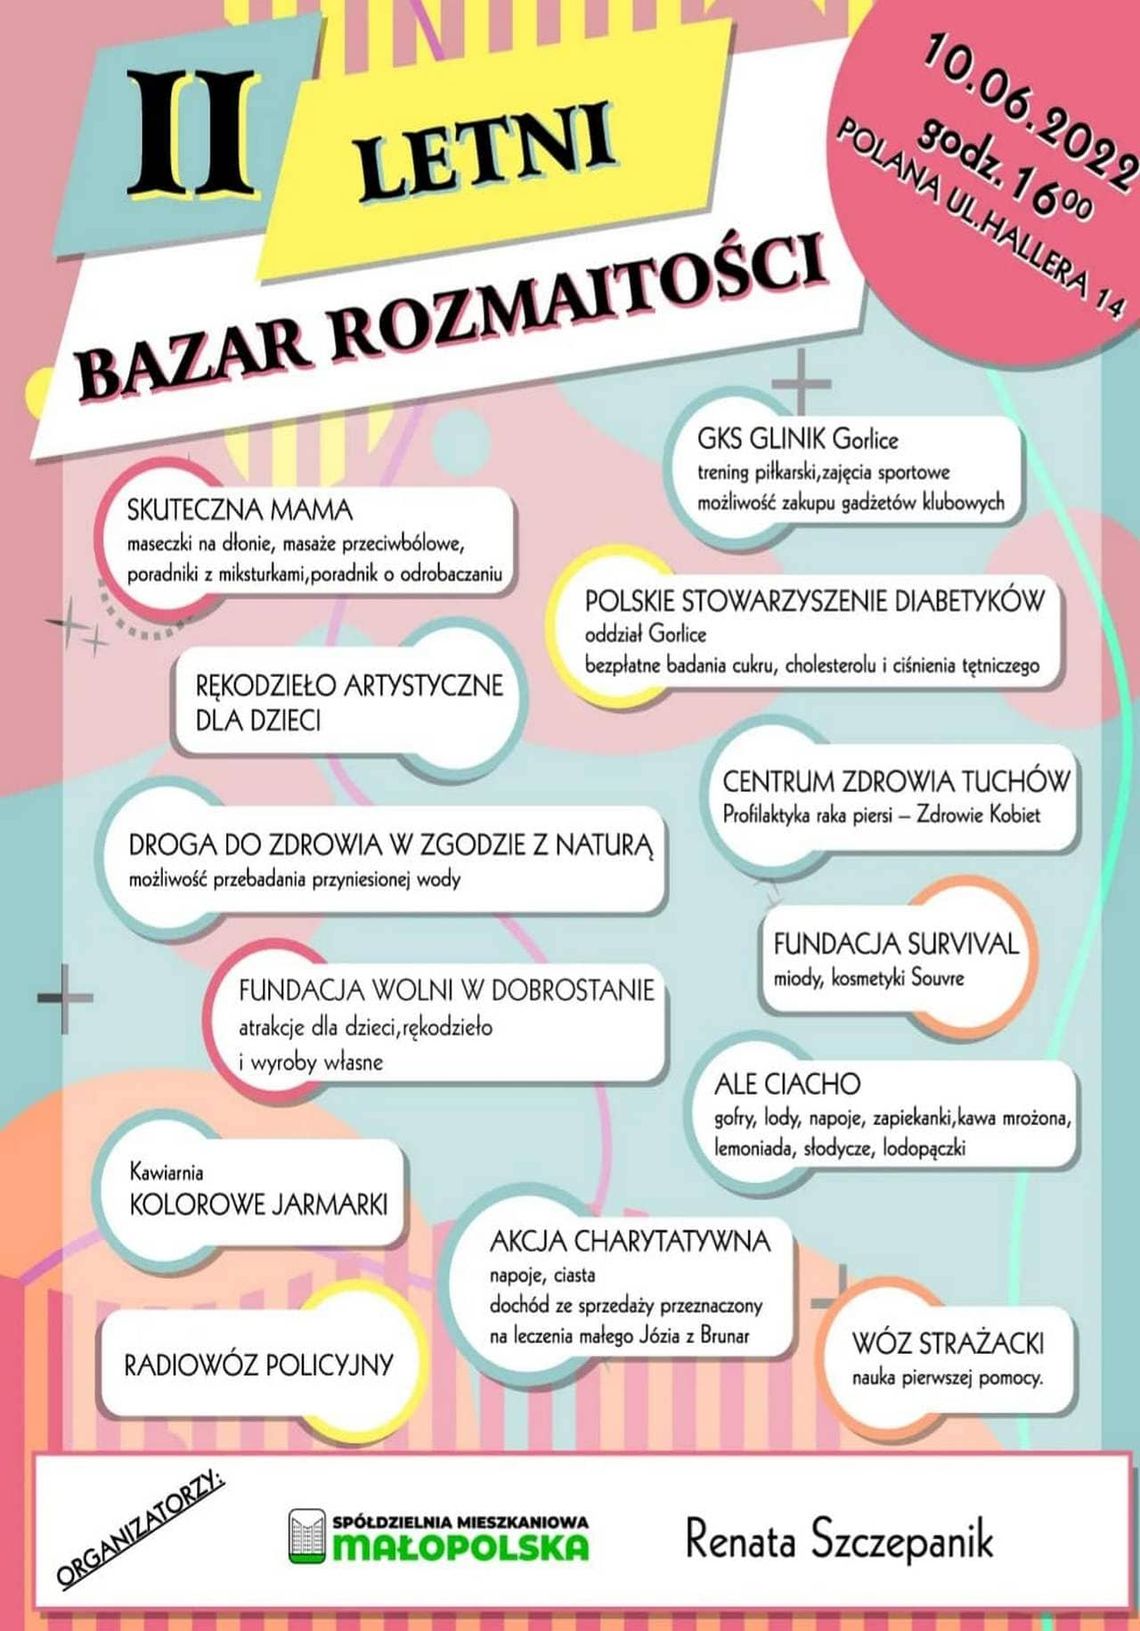 II Letni Bazar Rozmaitości | zapowiedzi imprez – halogorlice.info